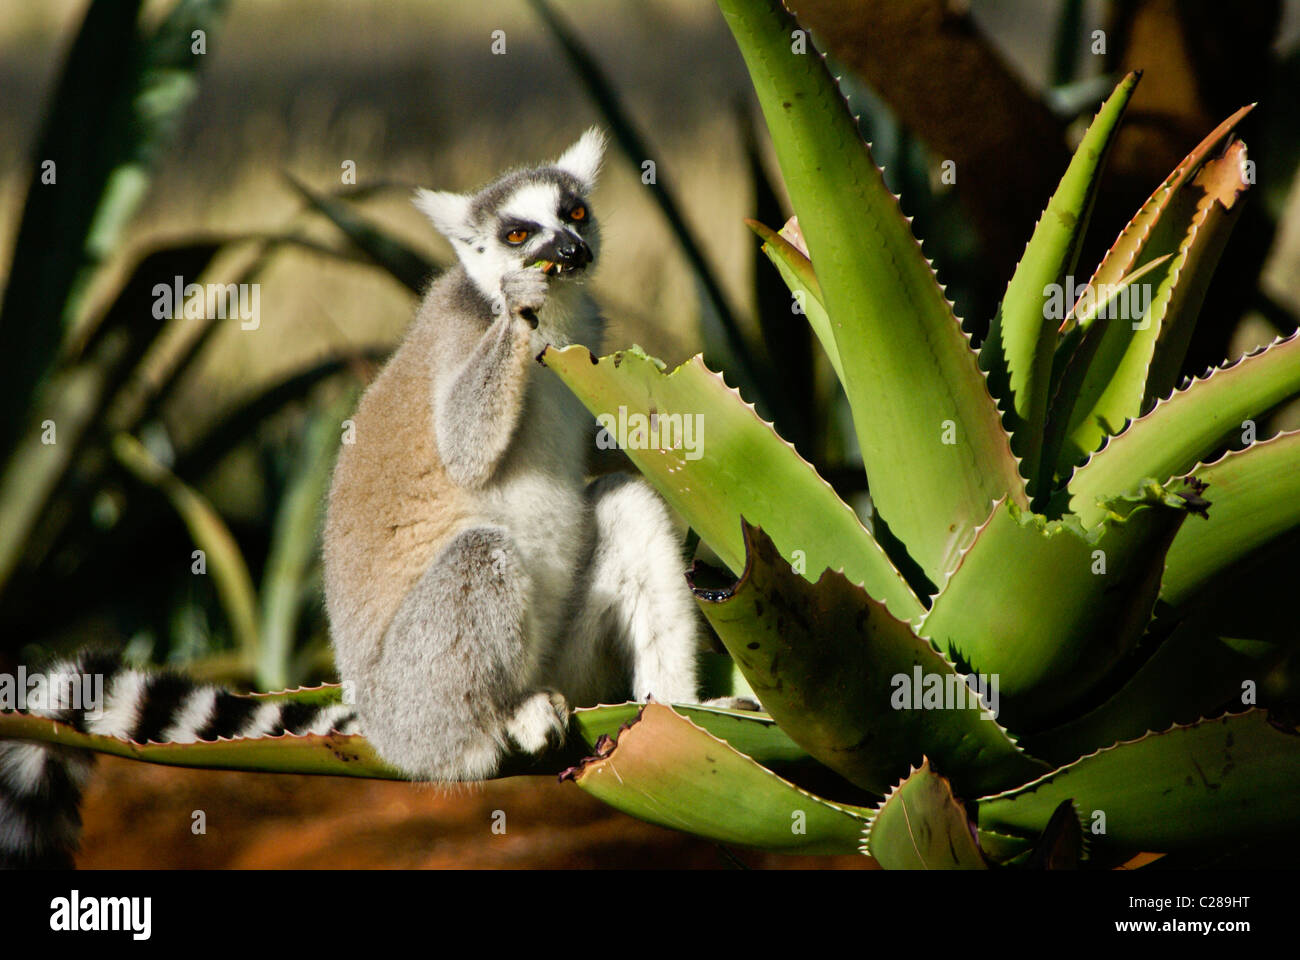 Ring-tailed lemur feeding on aloe plant, Madagascar Stock Photo